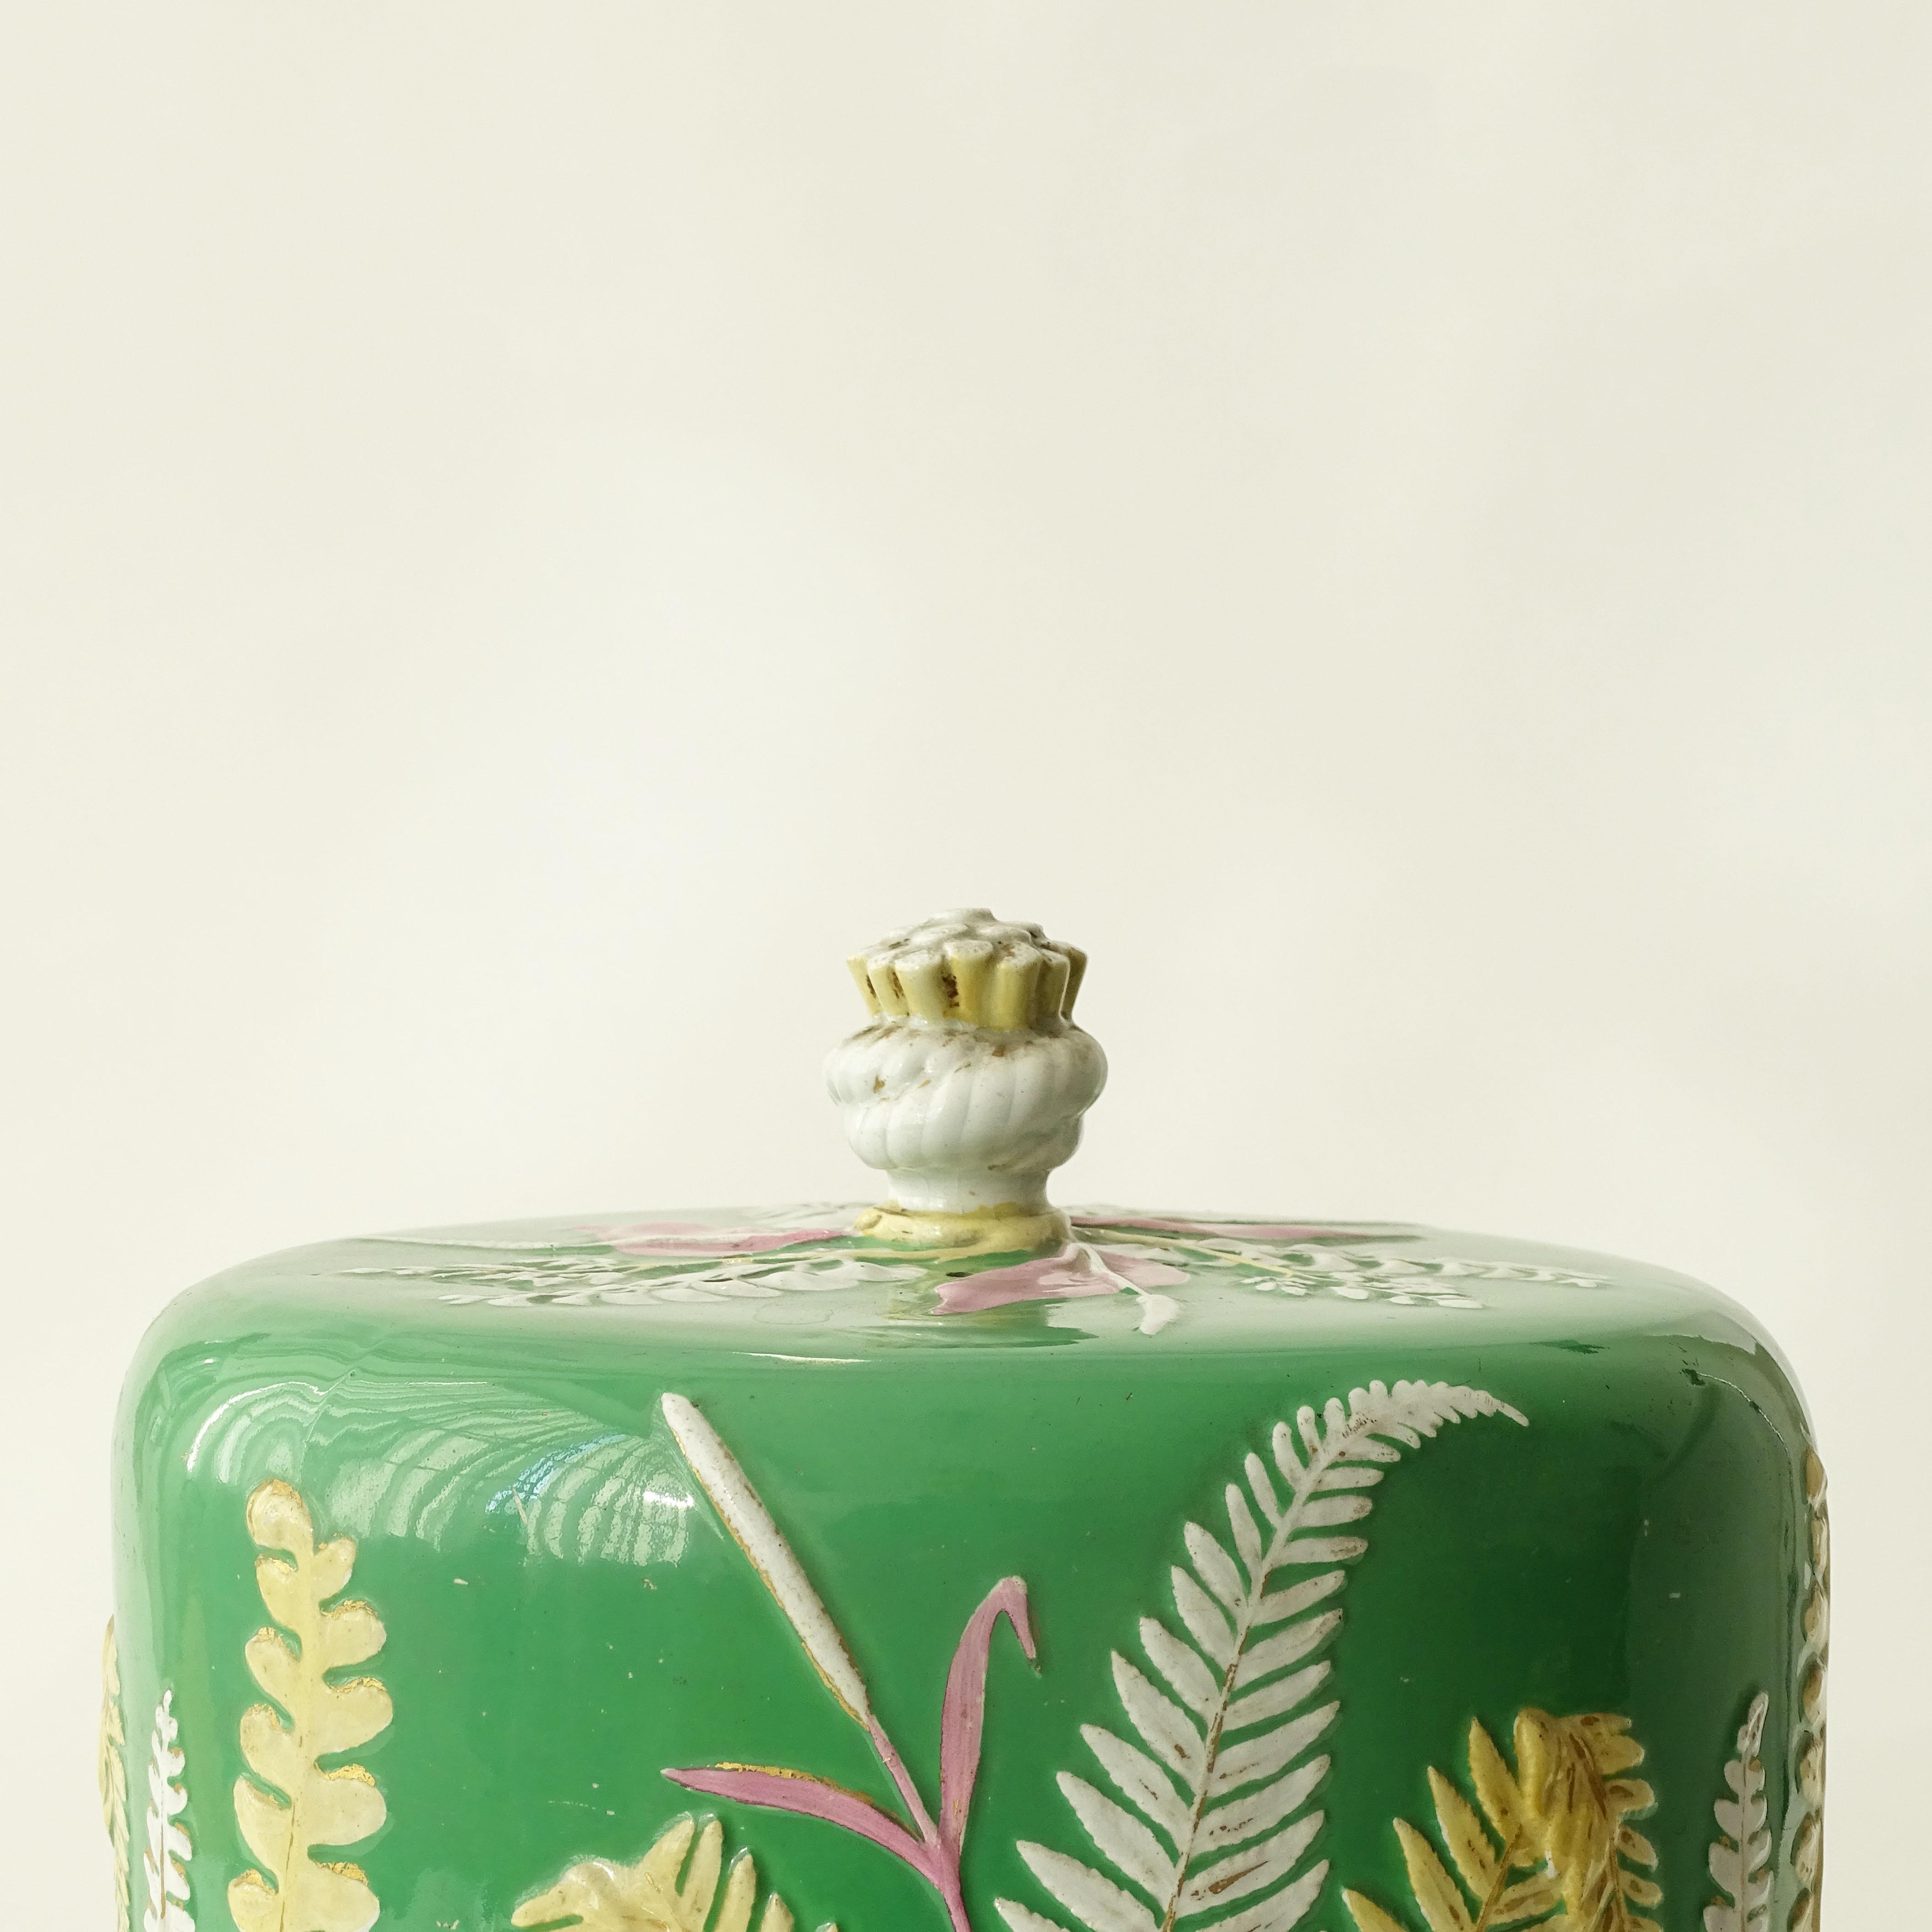 Dôme et plat à fromage en grès de Dudson.
Le dôme est d'un magnifique vert décoré de feuilles de fougères appliquées en bas-relief et de graminées blanches, jaunes et roses.
